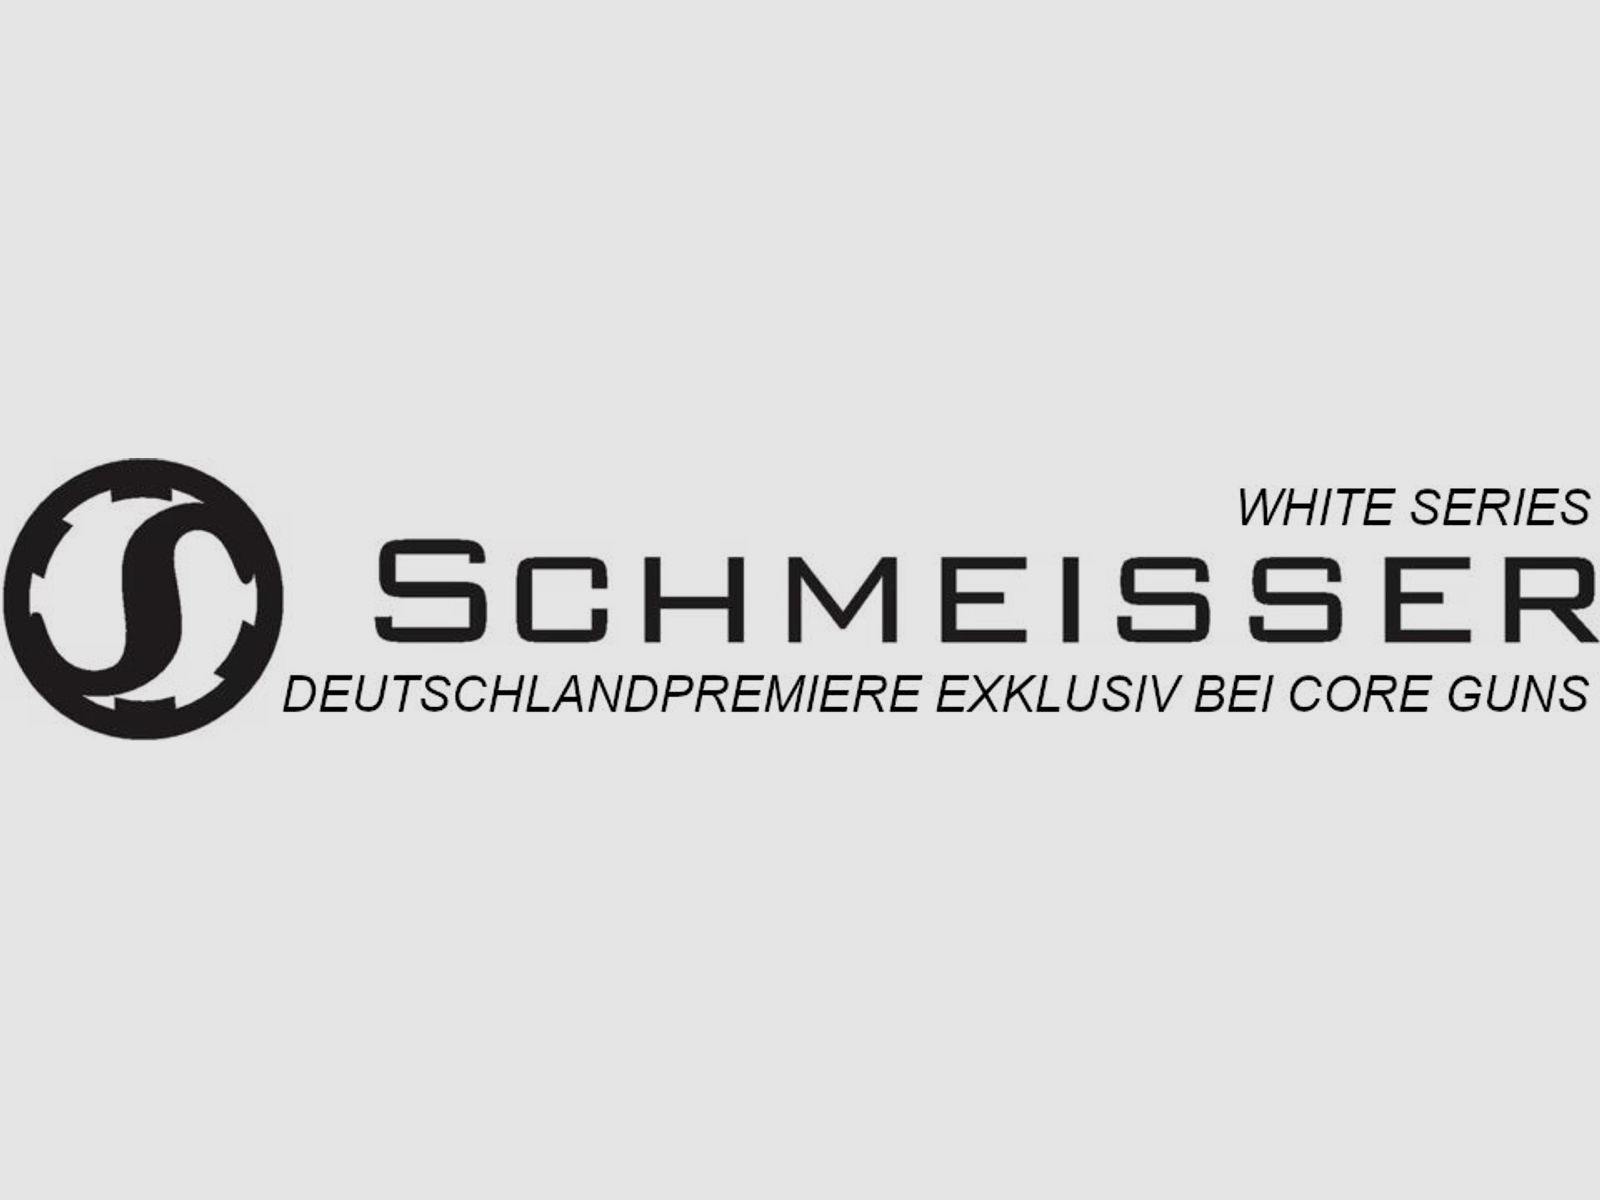 Schmeisser M5FL Schmeisser M4FL AR15-9 S4F Sport WHITE SERIES PREMIERE AR15	 Deutschlandpremiere exklusiv bei www.core-guns.com UVP:  2649-2849